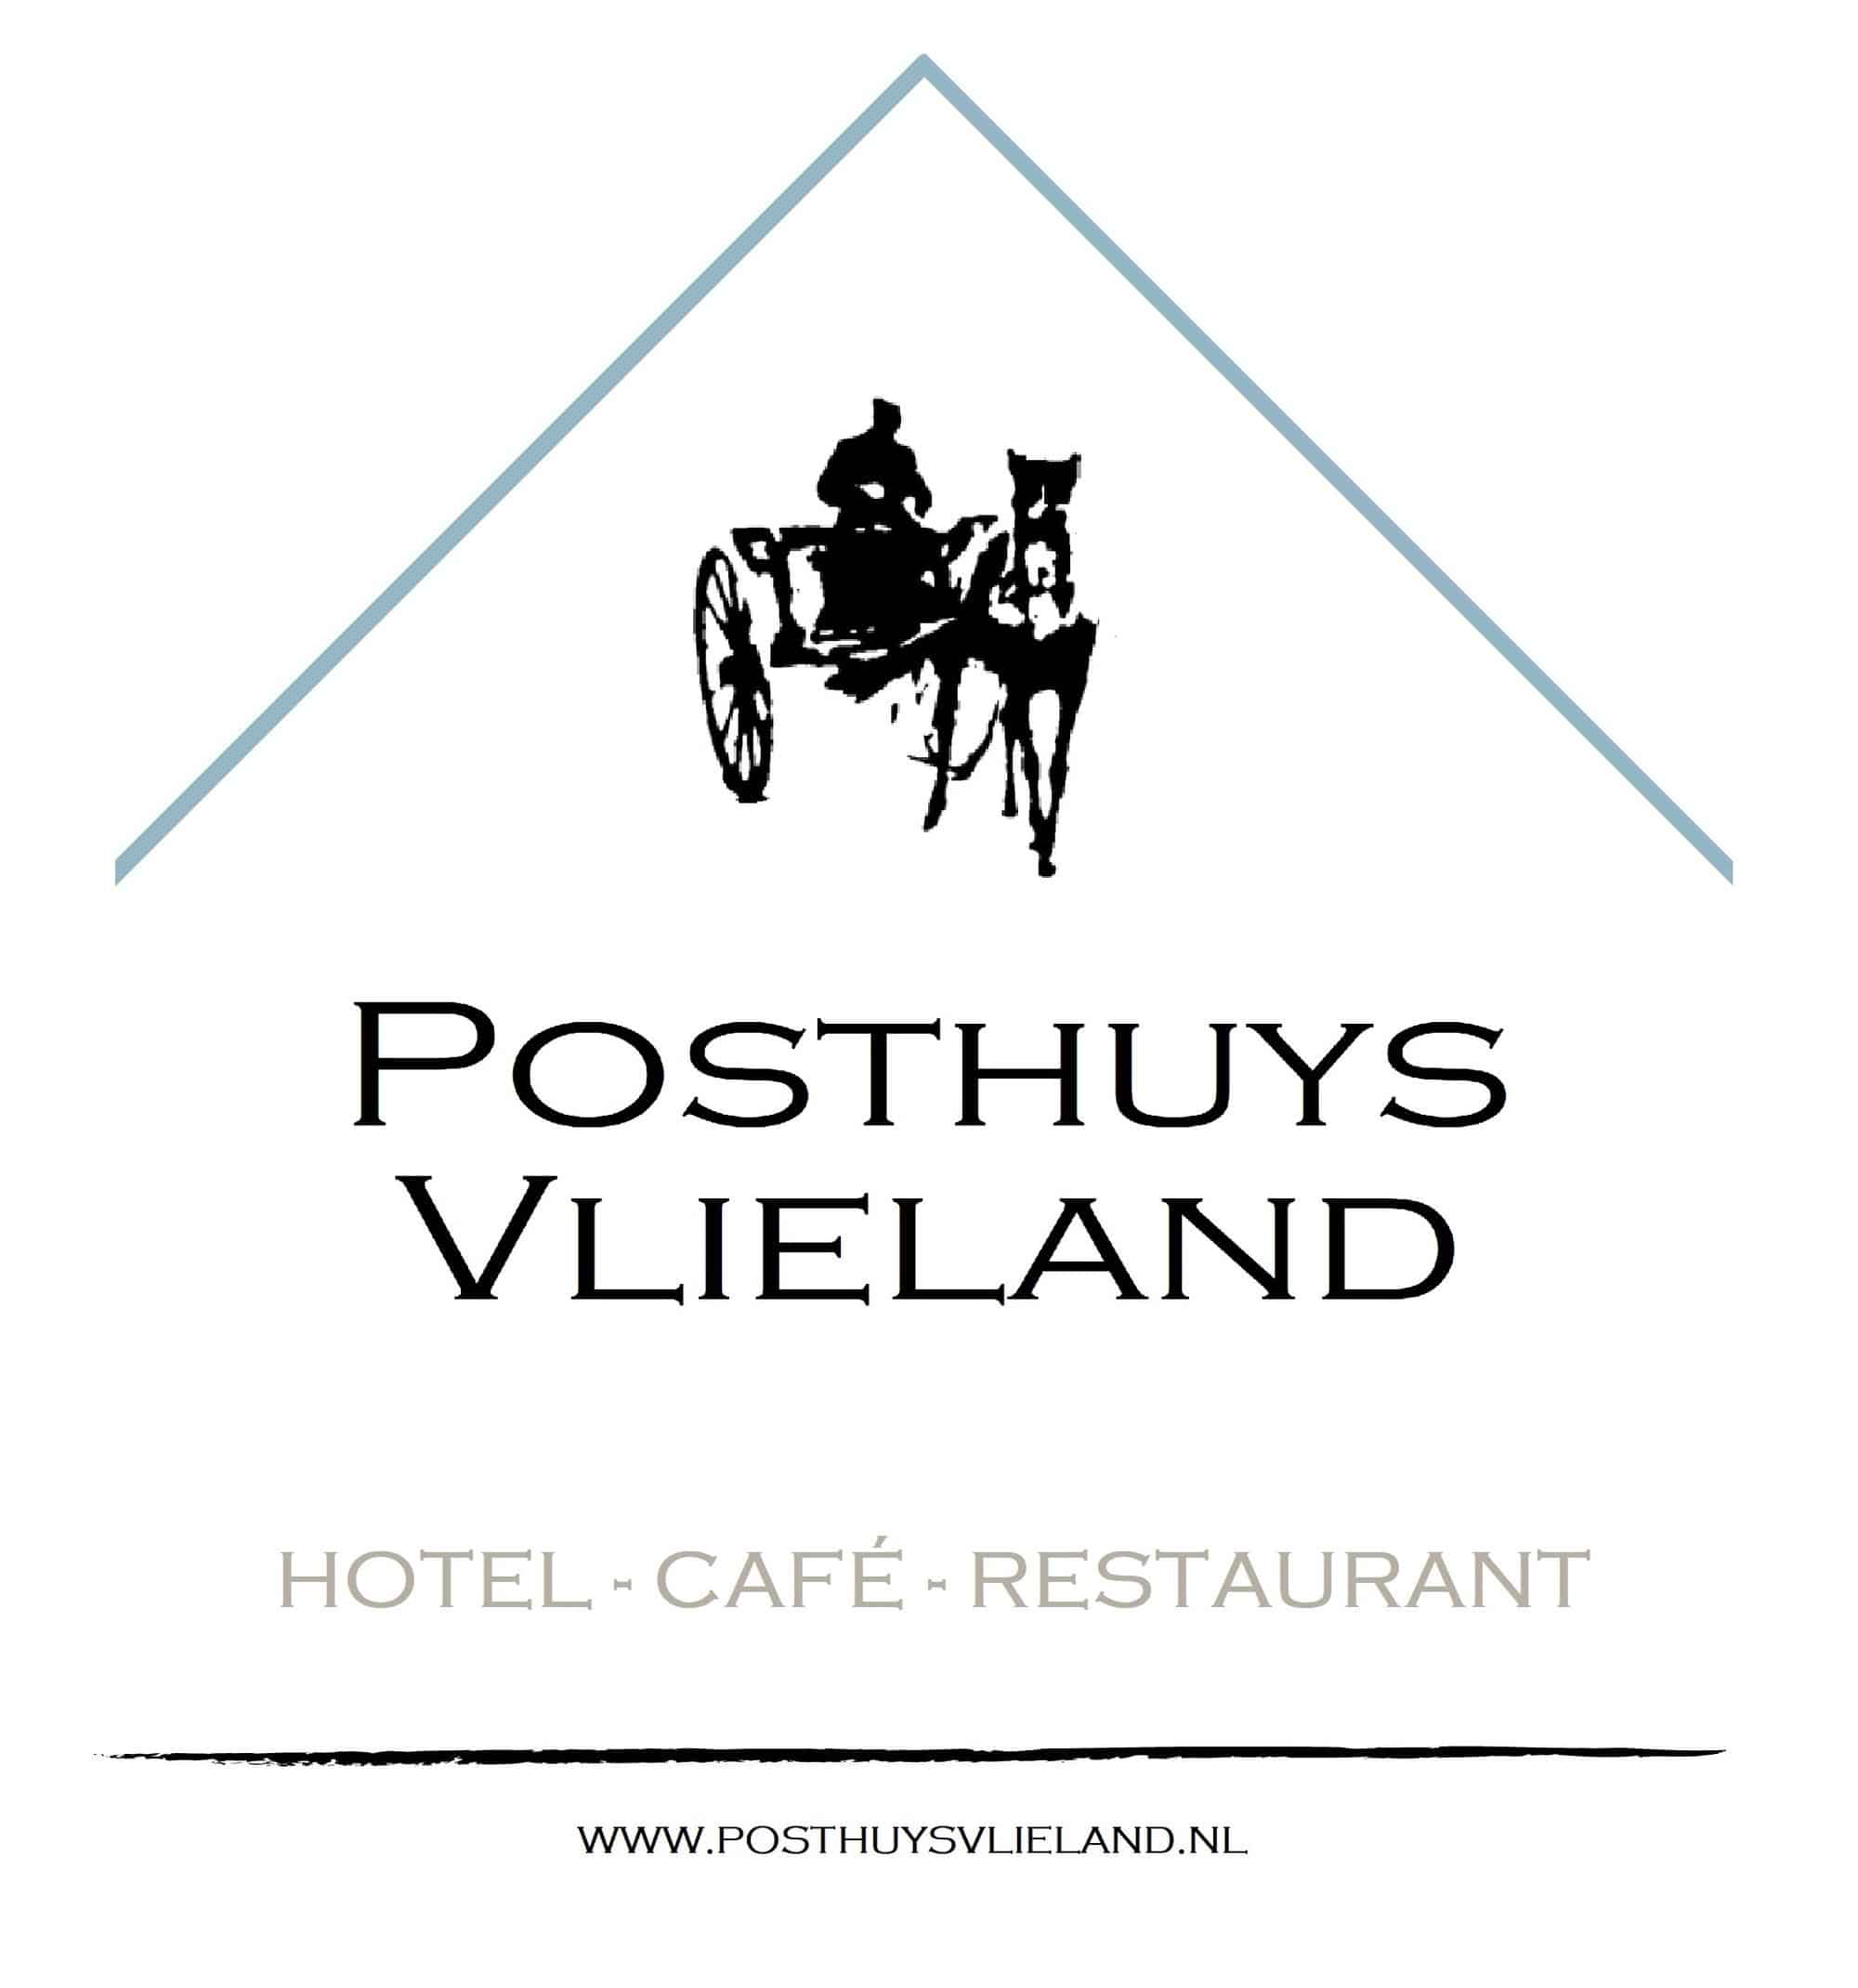 Hotel Café Restaurant Posthuys Vlieland